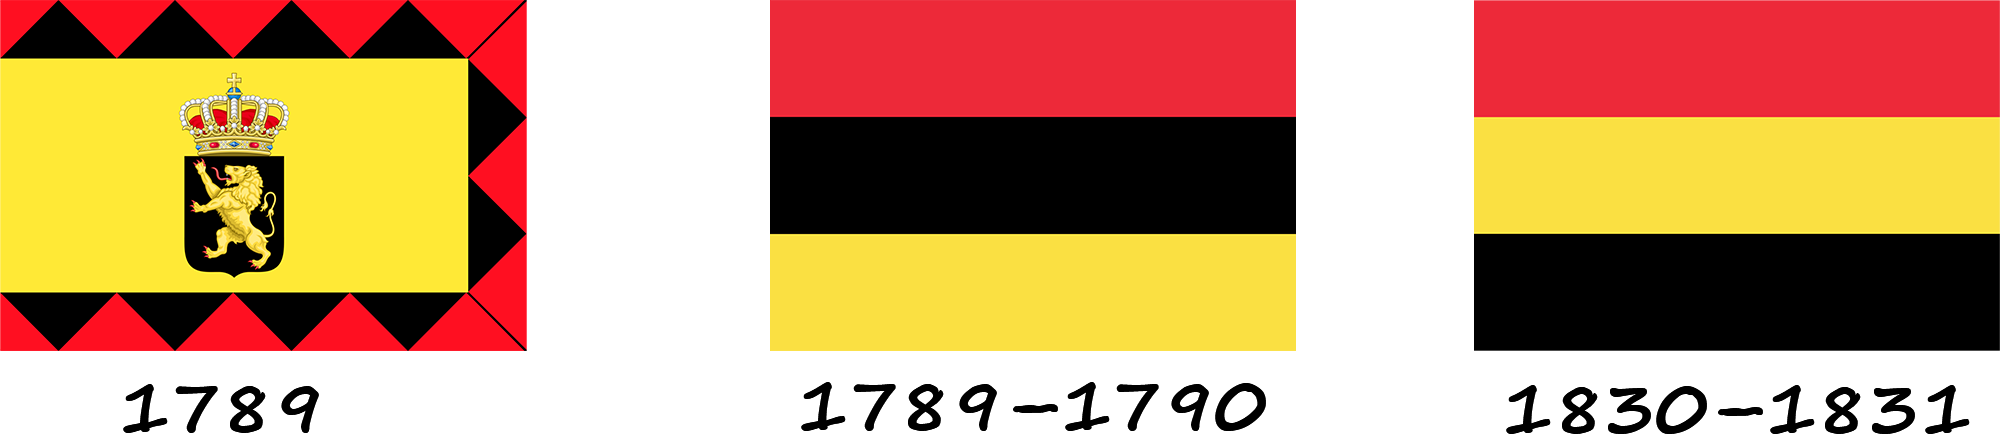 Історія прапора Бельгії